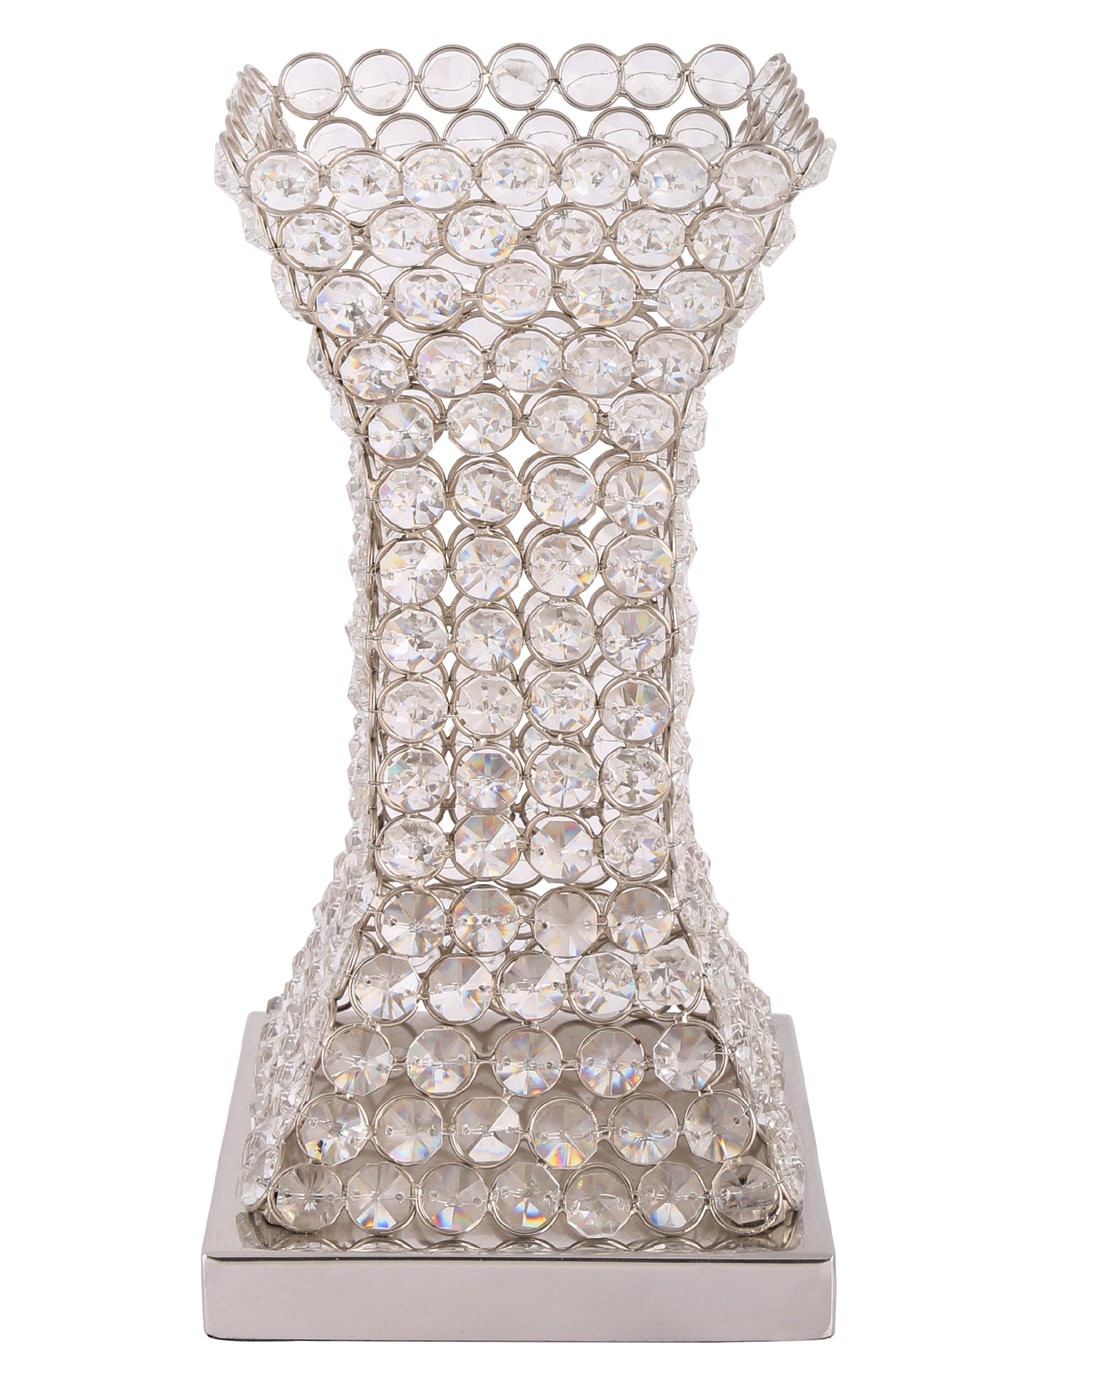 Buy Hand Made Glass Crystal  Natural Flower Vase Online at Rajrang